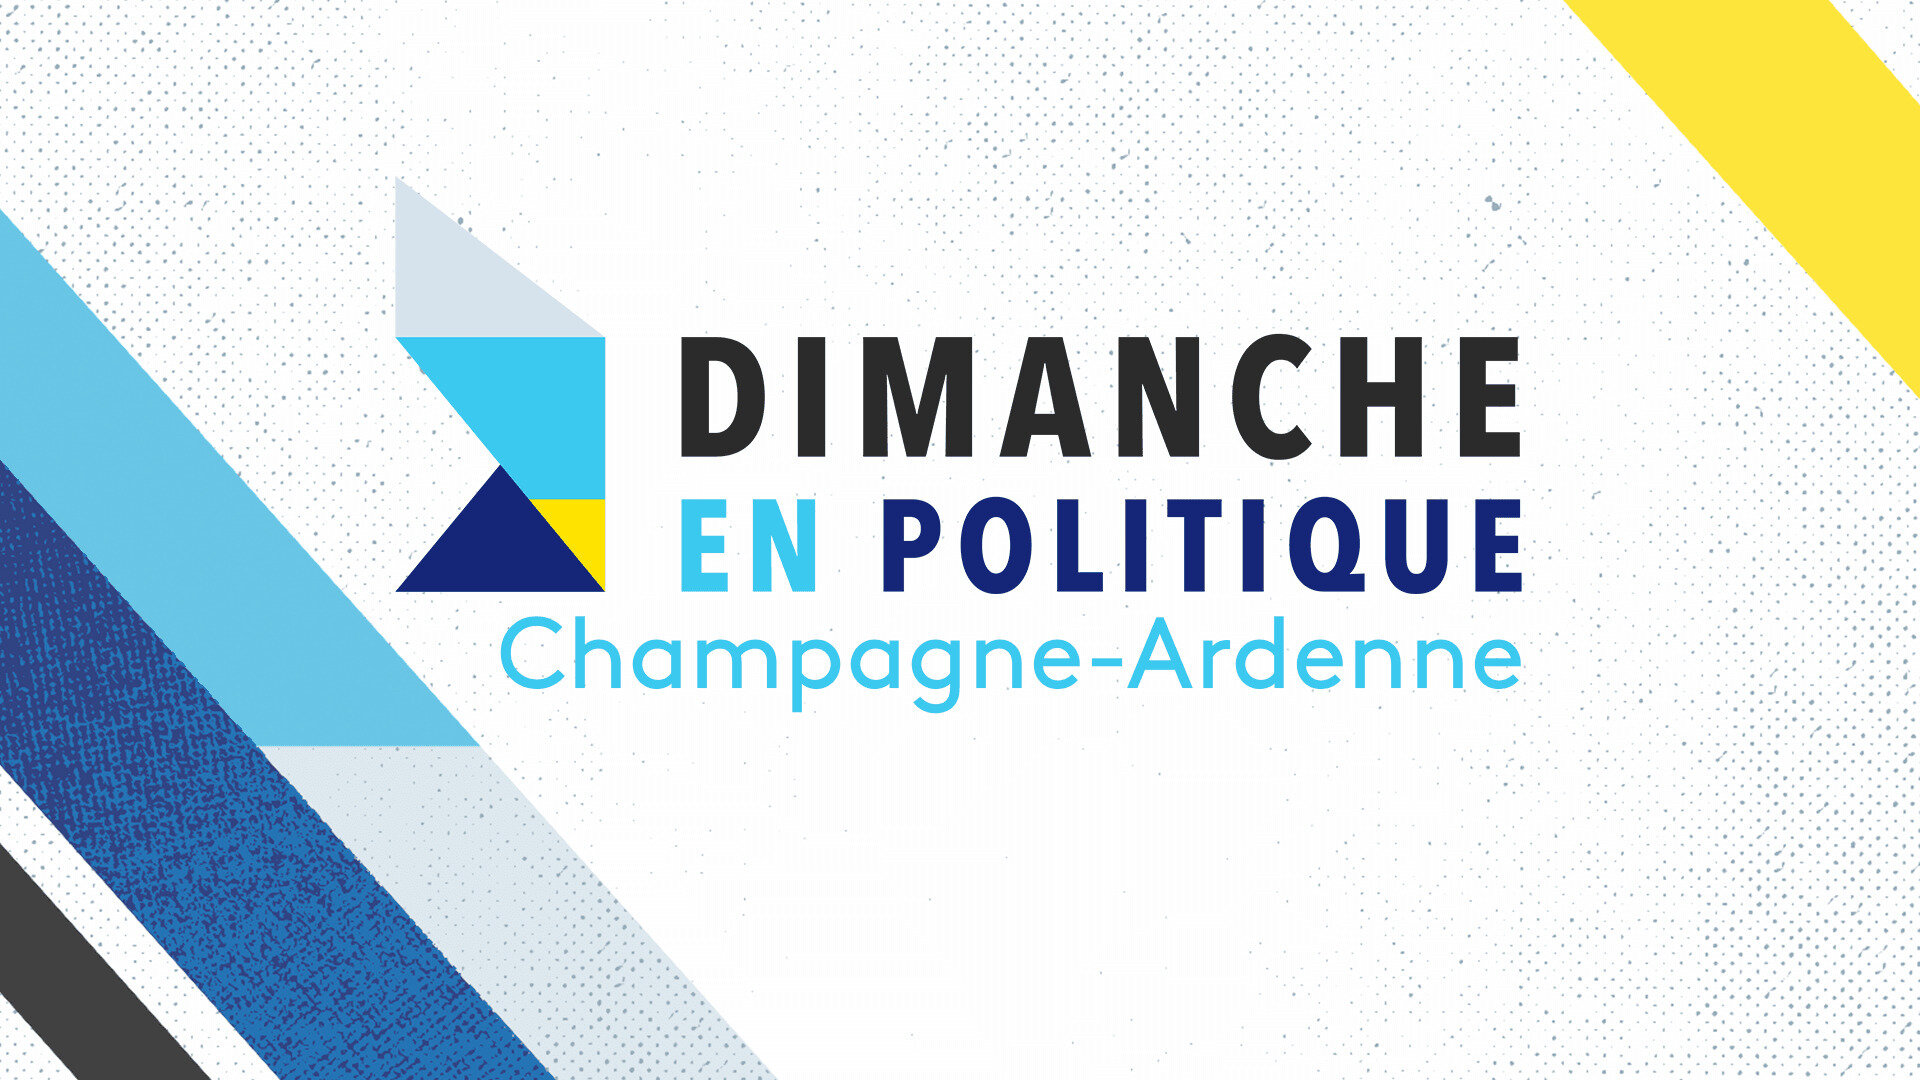 Dimanche en politique - Champagne-Ardenne : Les Républicains face au défi du rassemblement